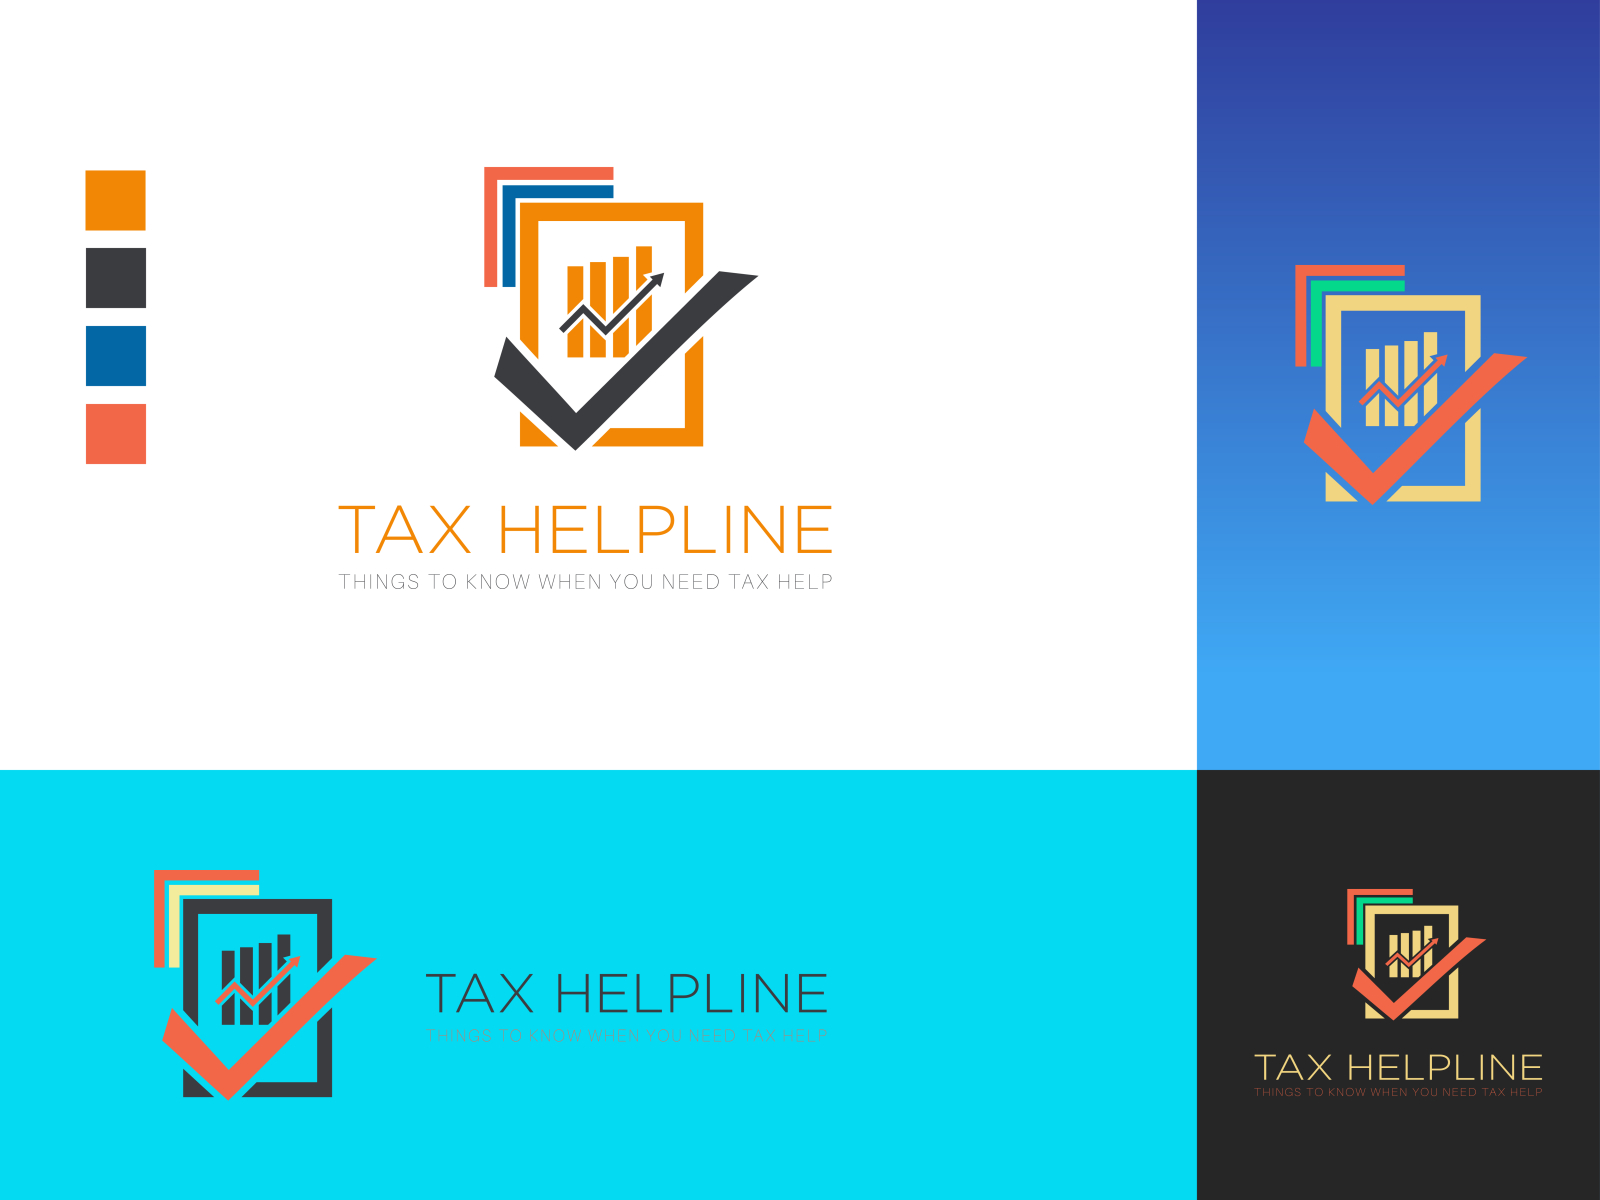 Tax Helpline Logo by Anayet Hossin on Dribbble